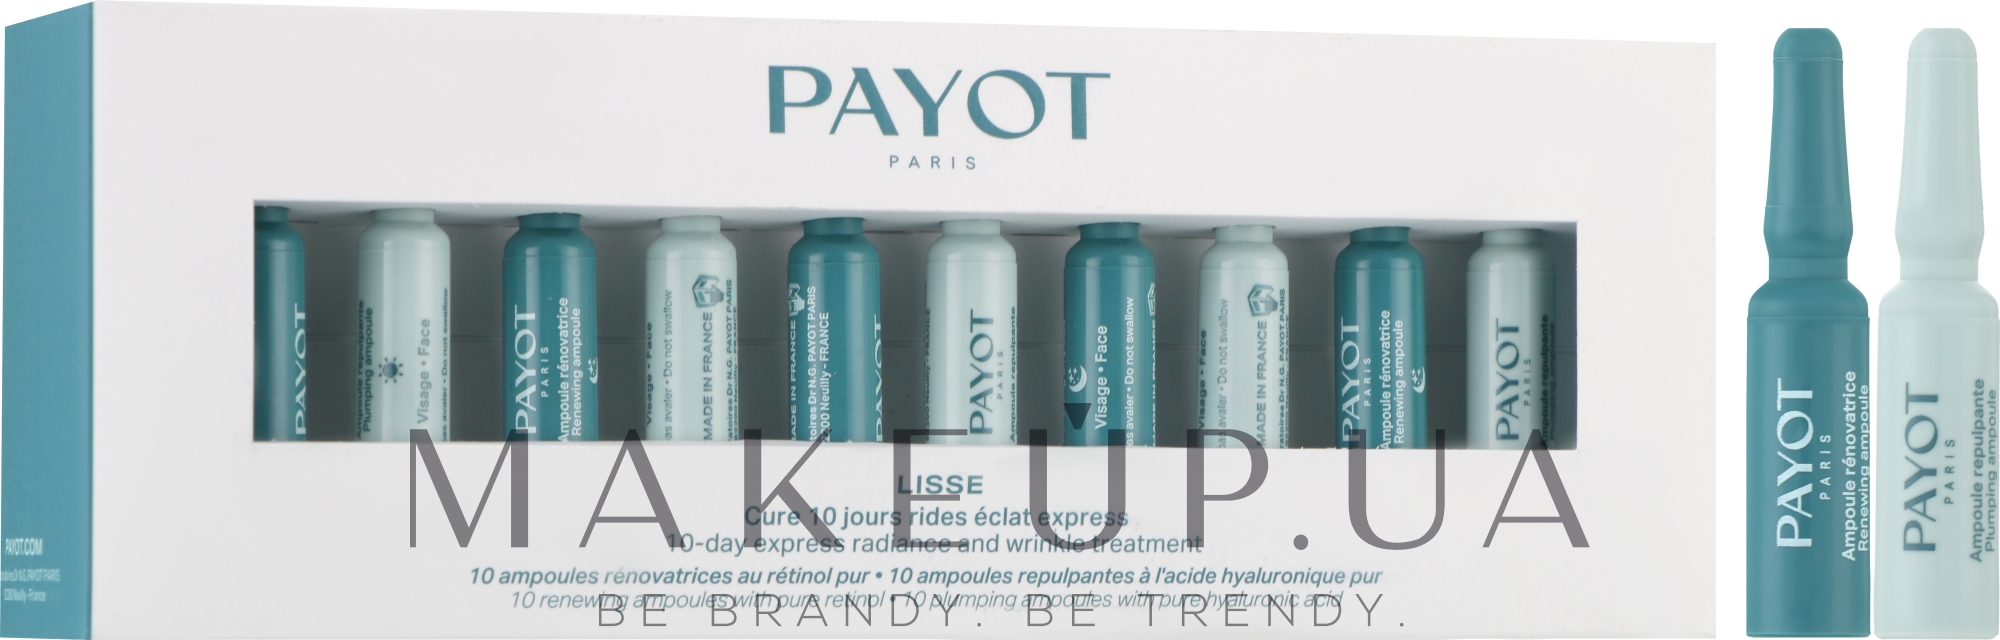 10-дневный экспресс-уход для сияния кожи и от морщин - Payot Lisse 10-Day Express Radiance and Wrinkles Treatment — фото 20x1ml